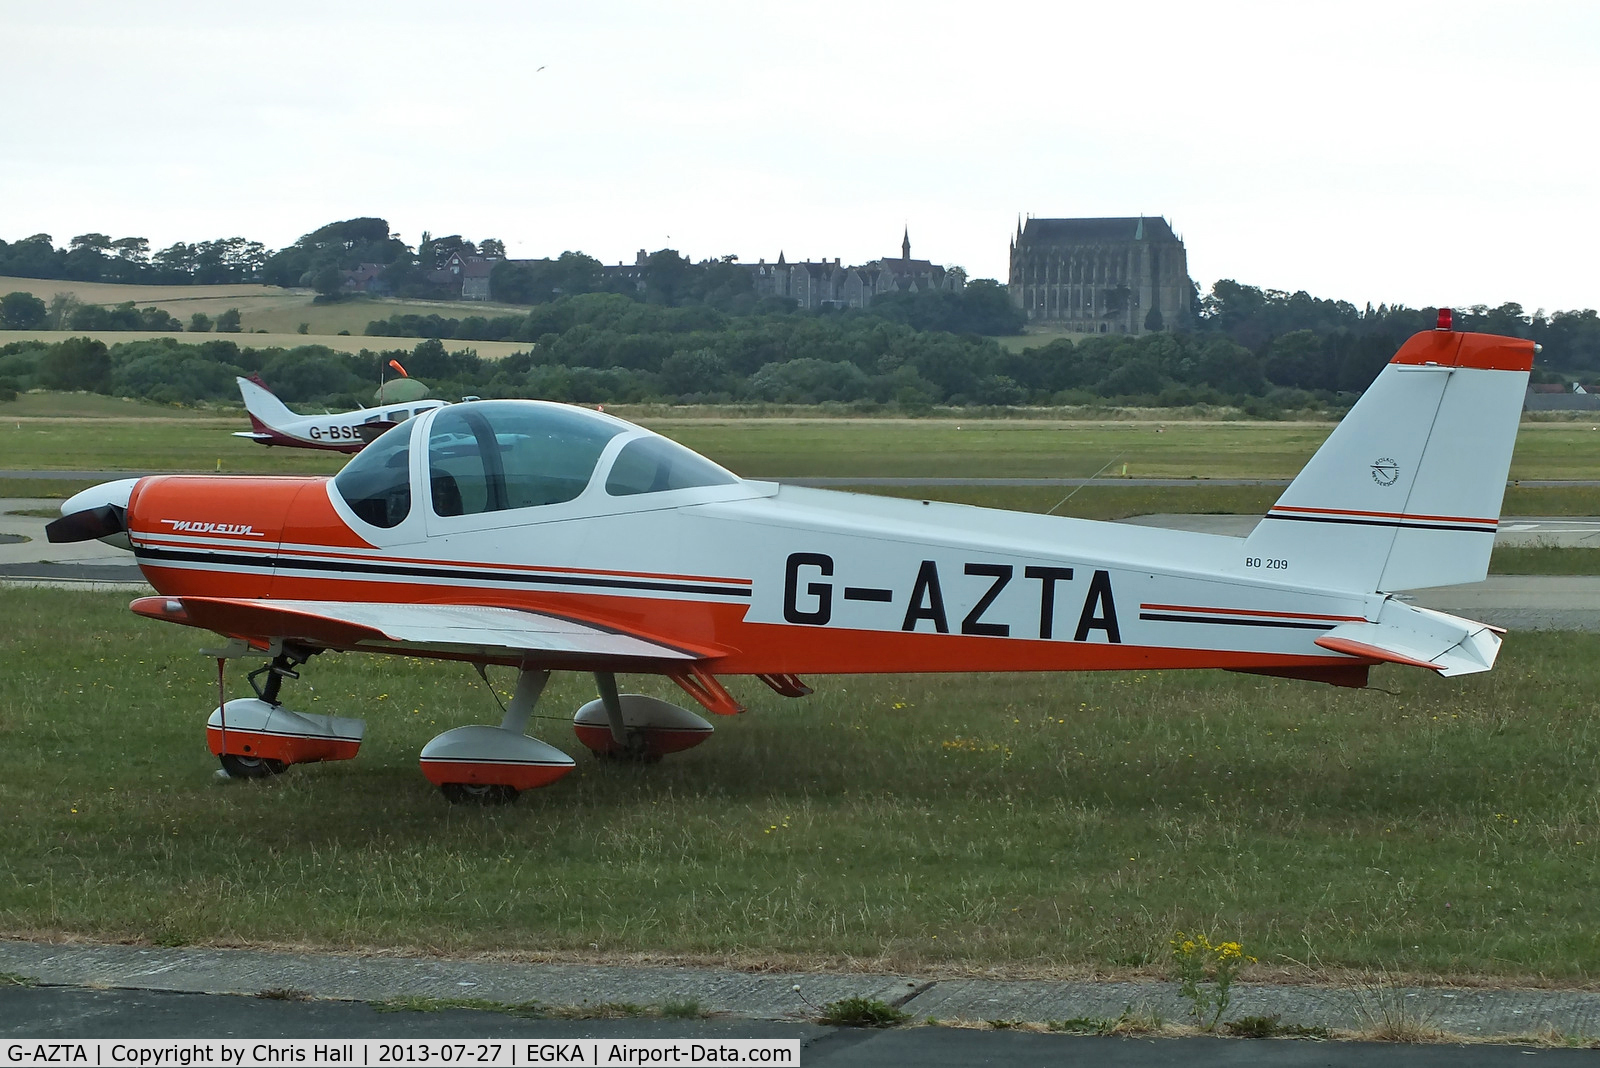 G-AZTA, 1972 Bolkow Bo-209 Monsun C/N 190, privately owned